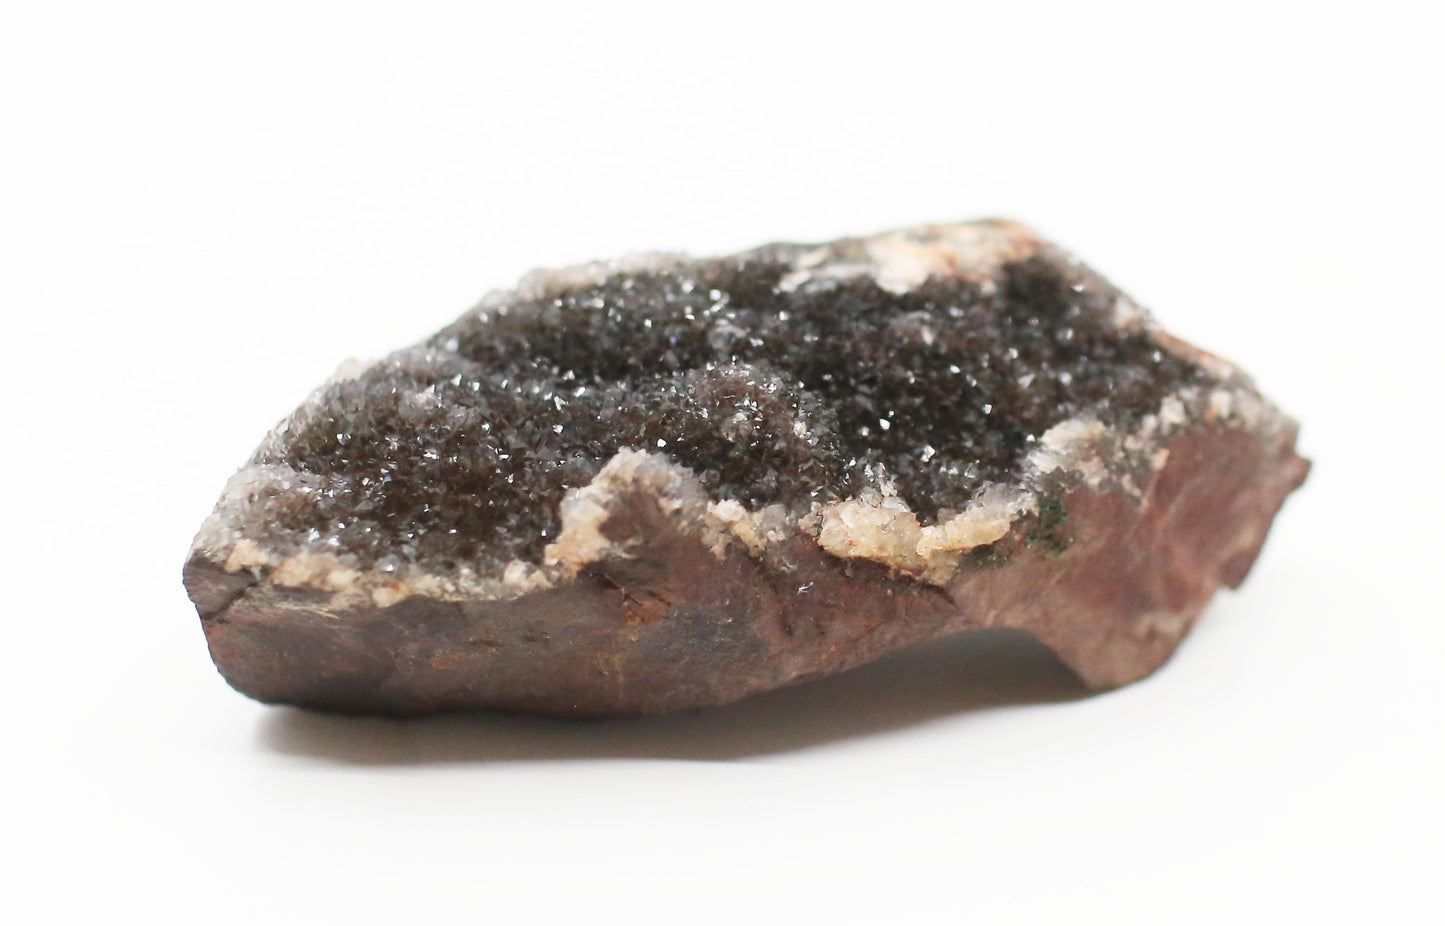 Natural Druzy Dolomite and Malachite on Hematite Matrix